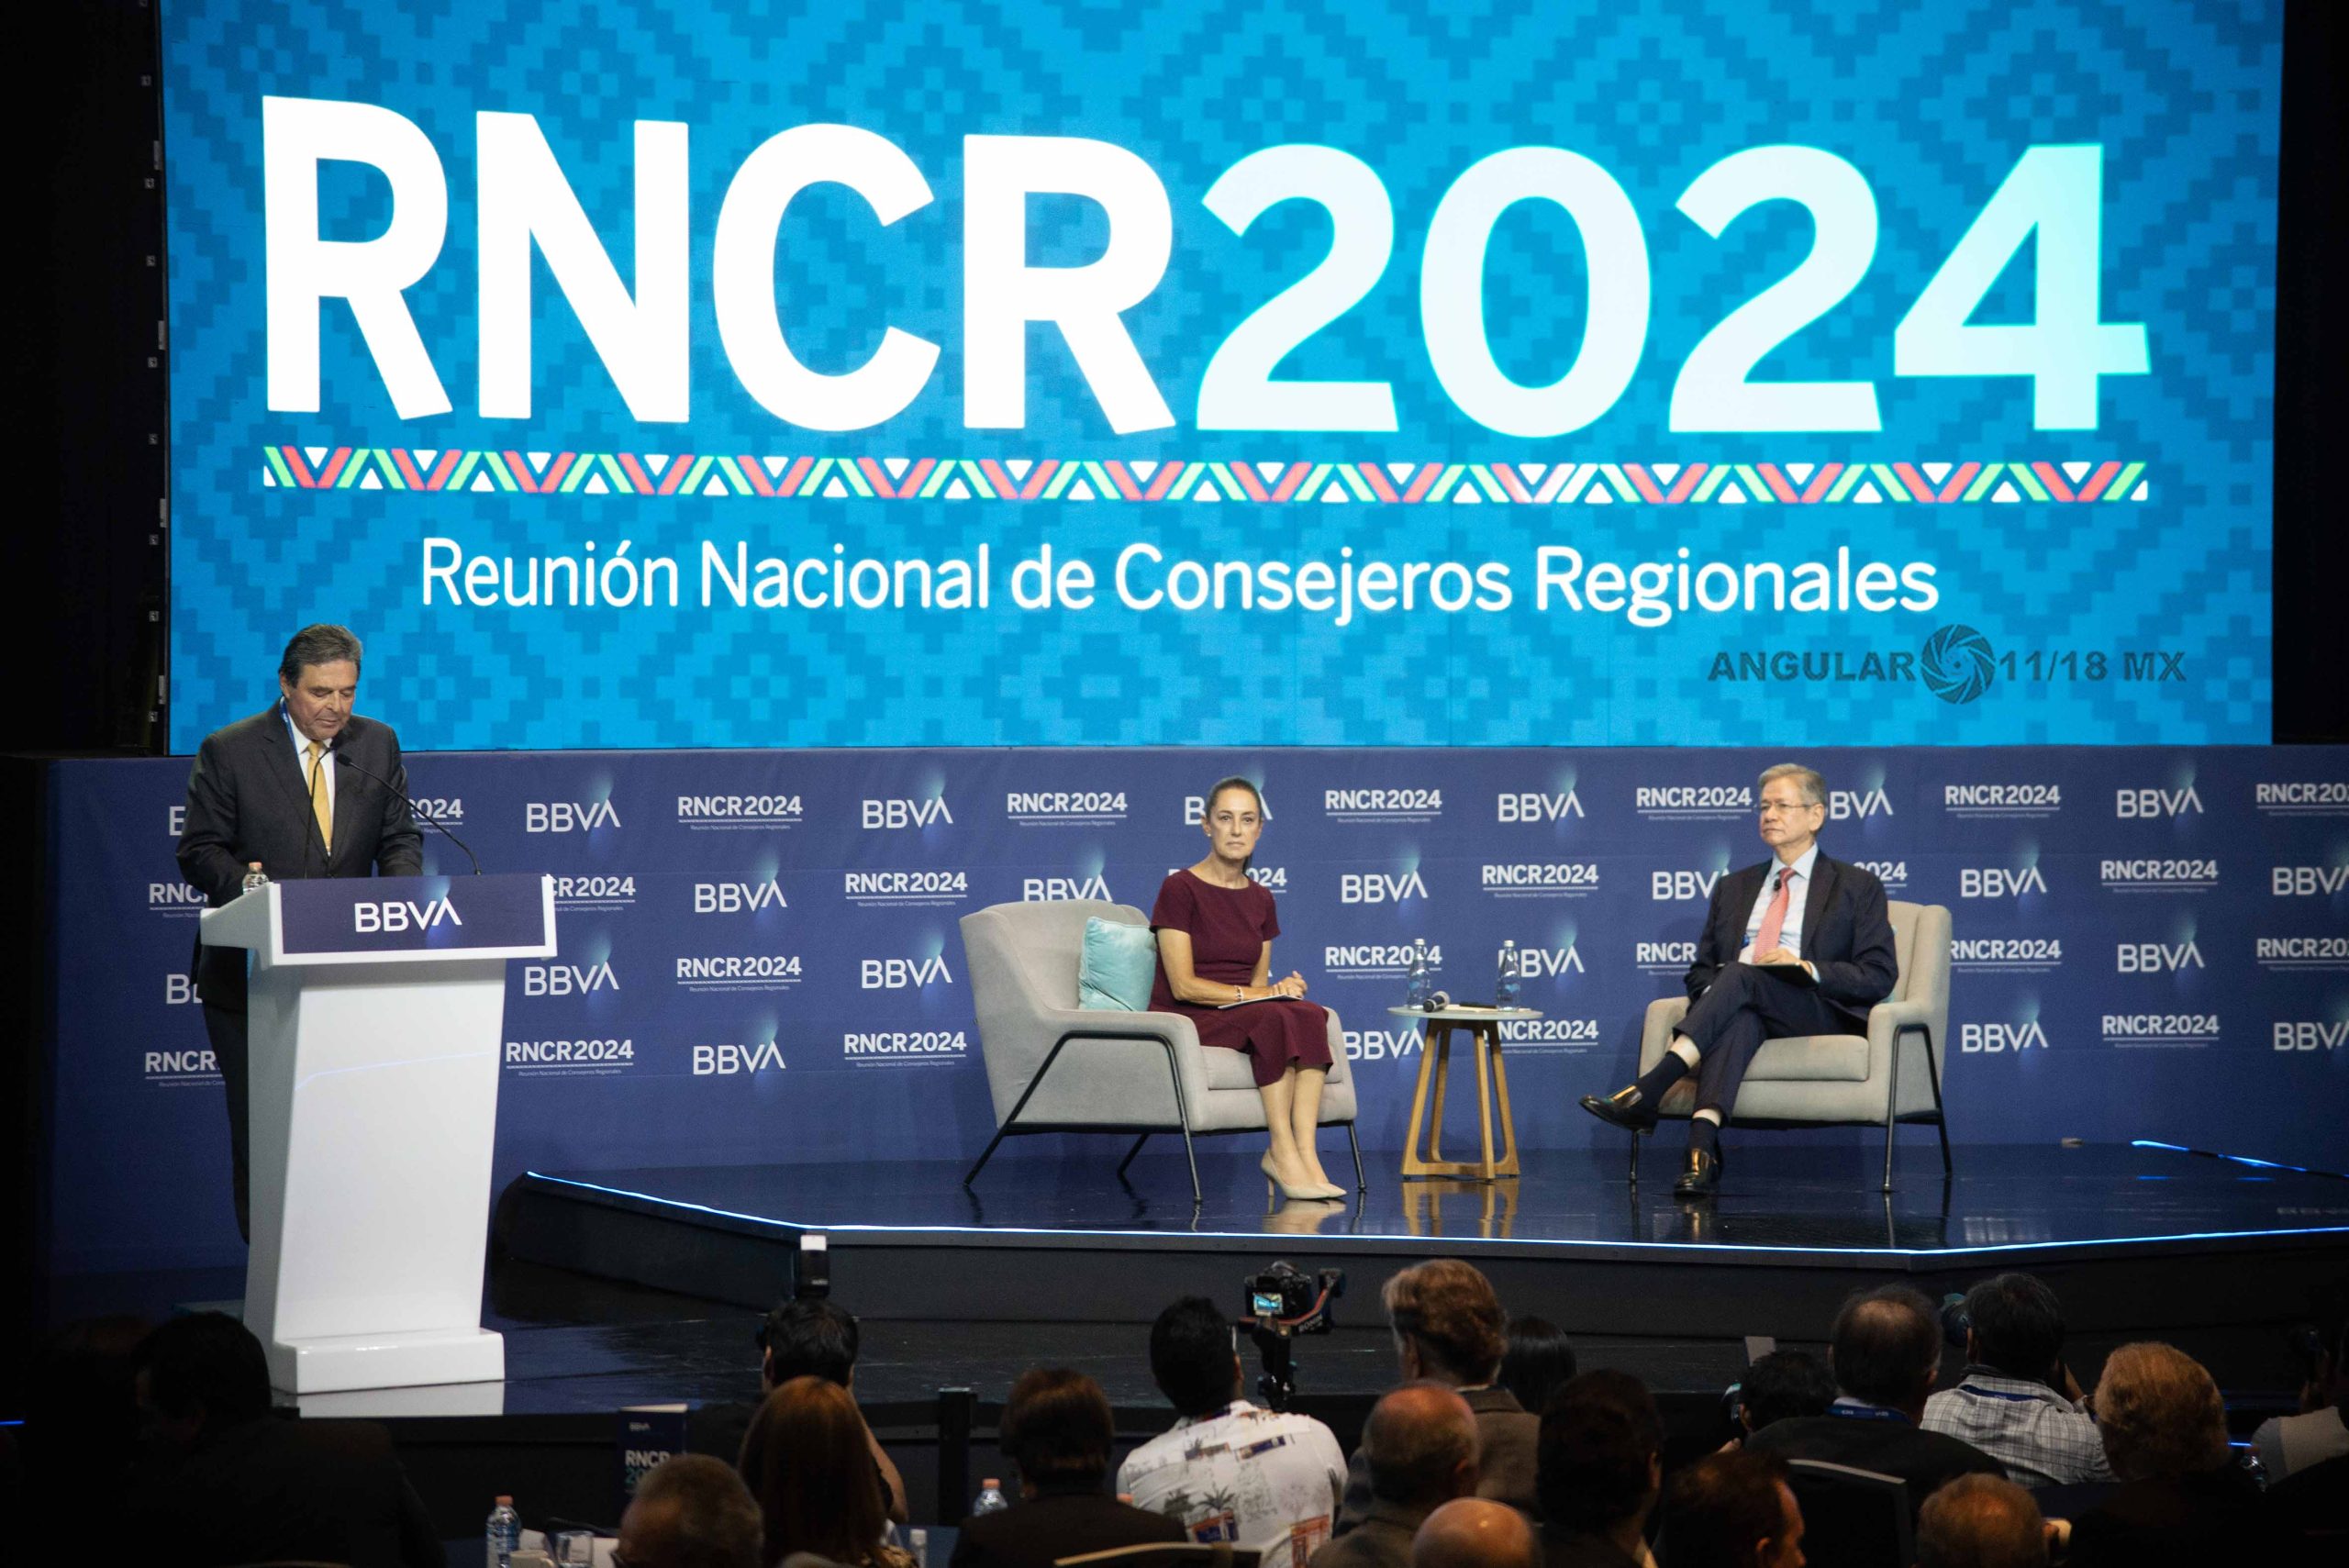 Reunión Nacional de Consejeros Regionales de BBVA México (RNCR2024)